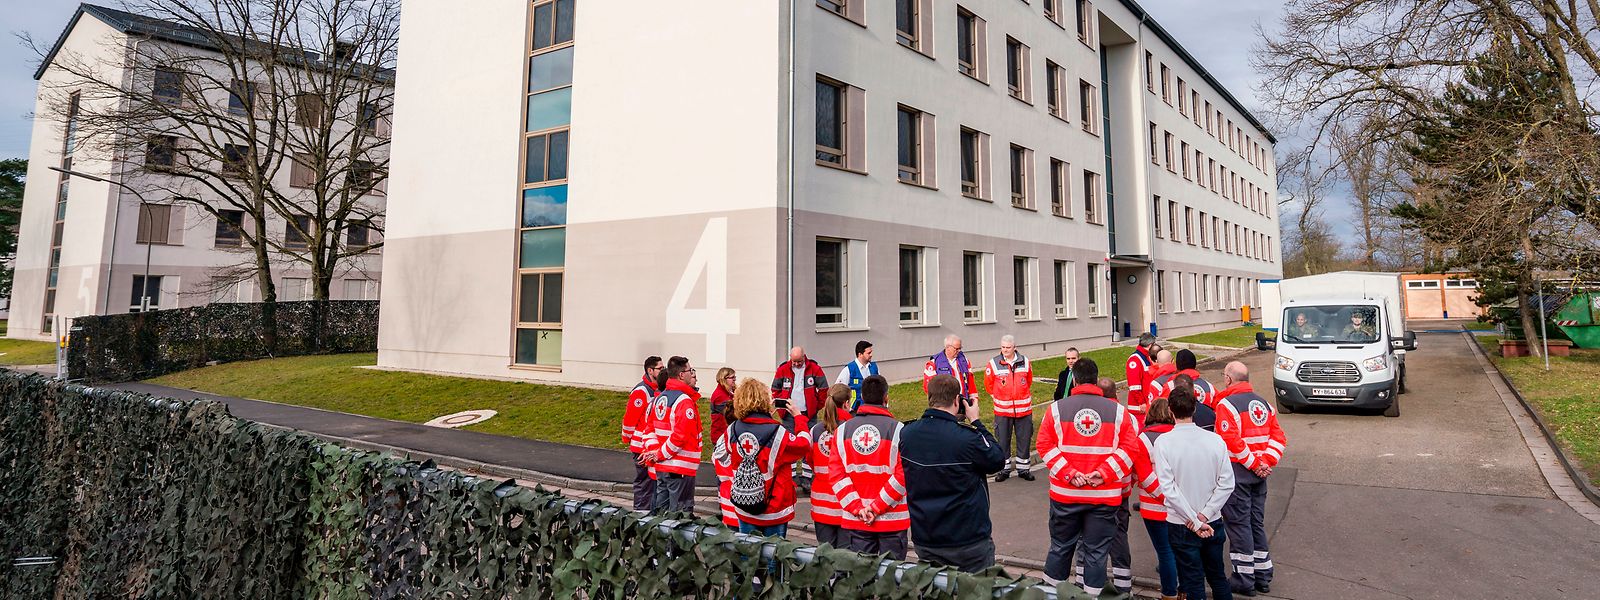 Mitarbeiter des Roten Kreuzes stehen auf dem Gelände der Kaserne Südpfalz der Bundeswehr vor dem Gebäude.